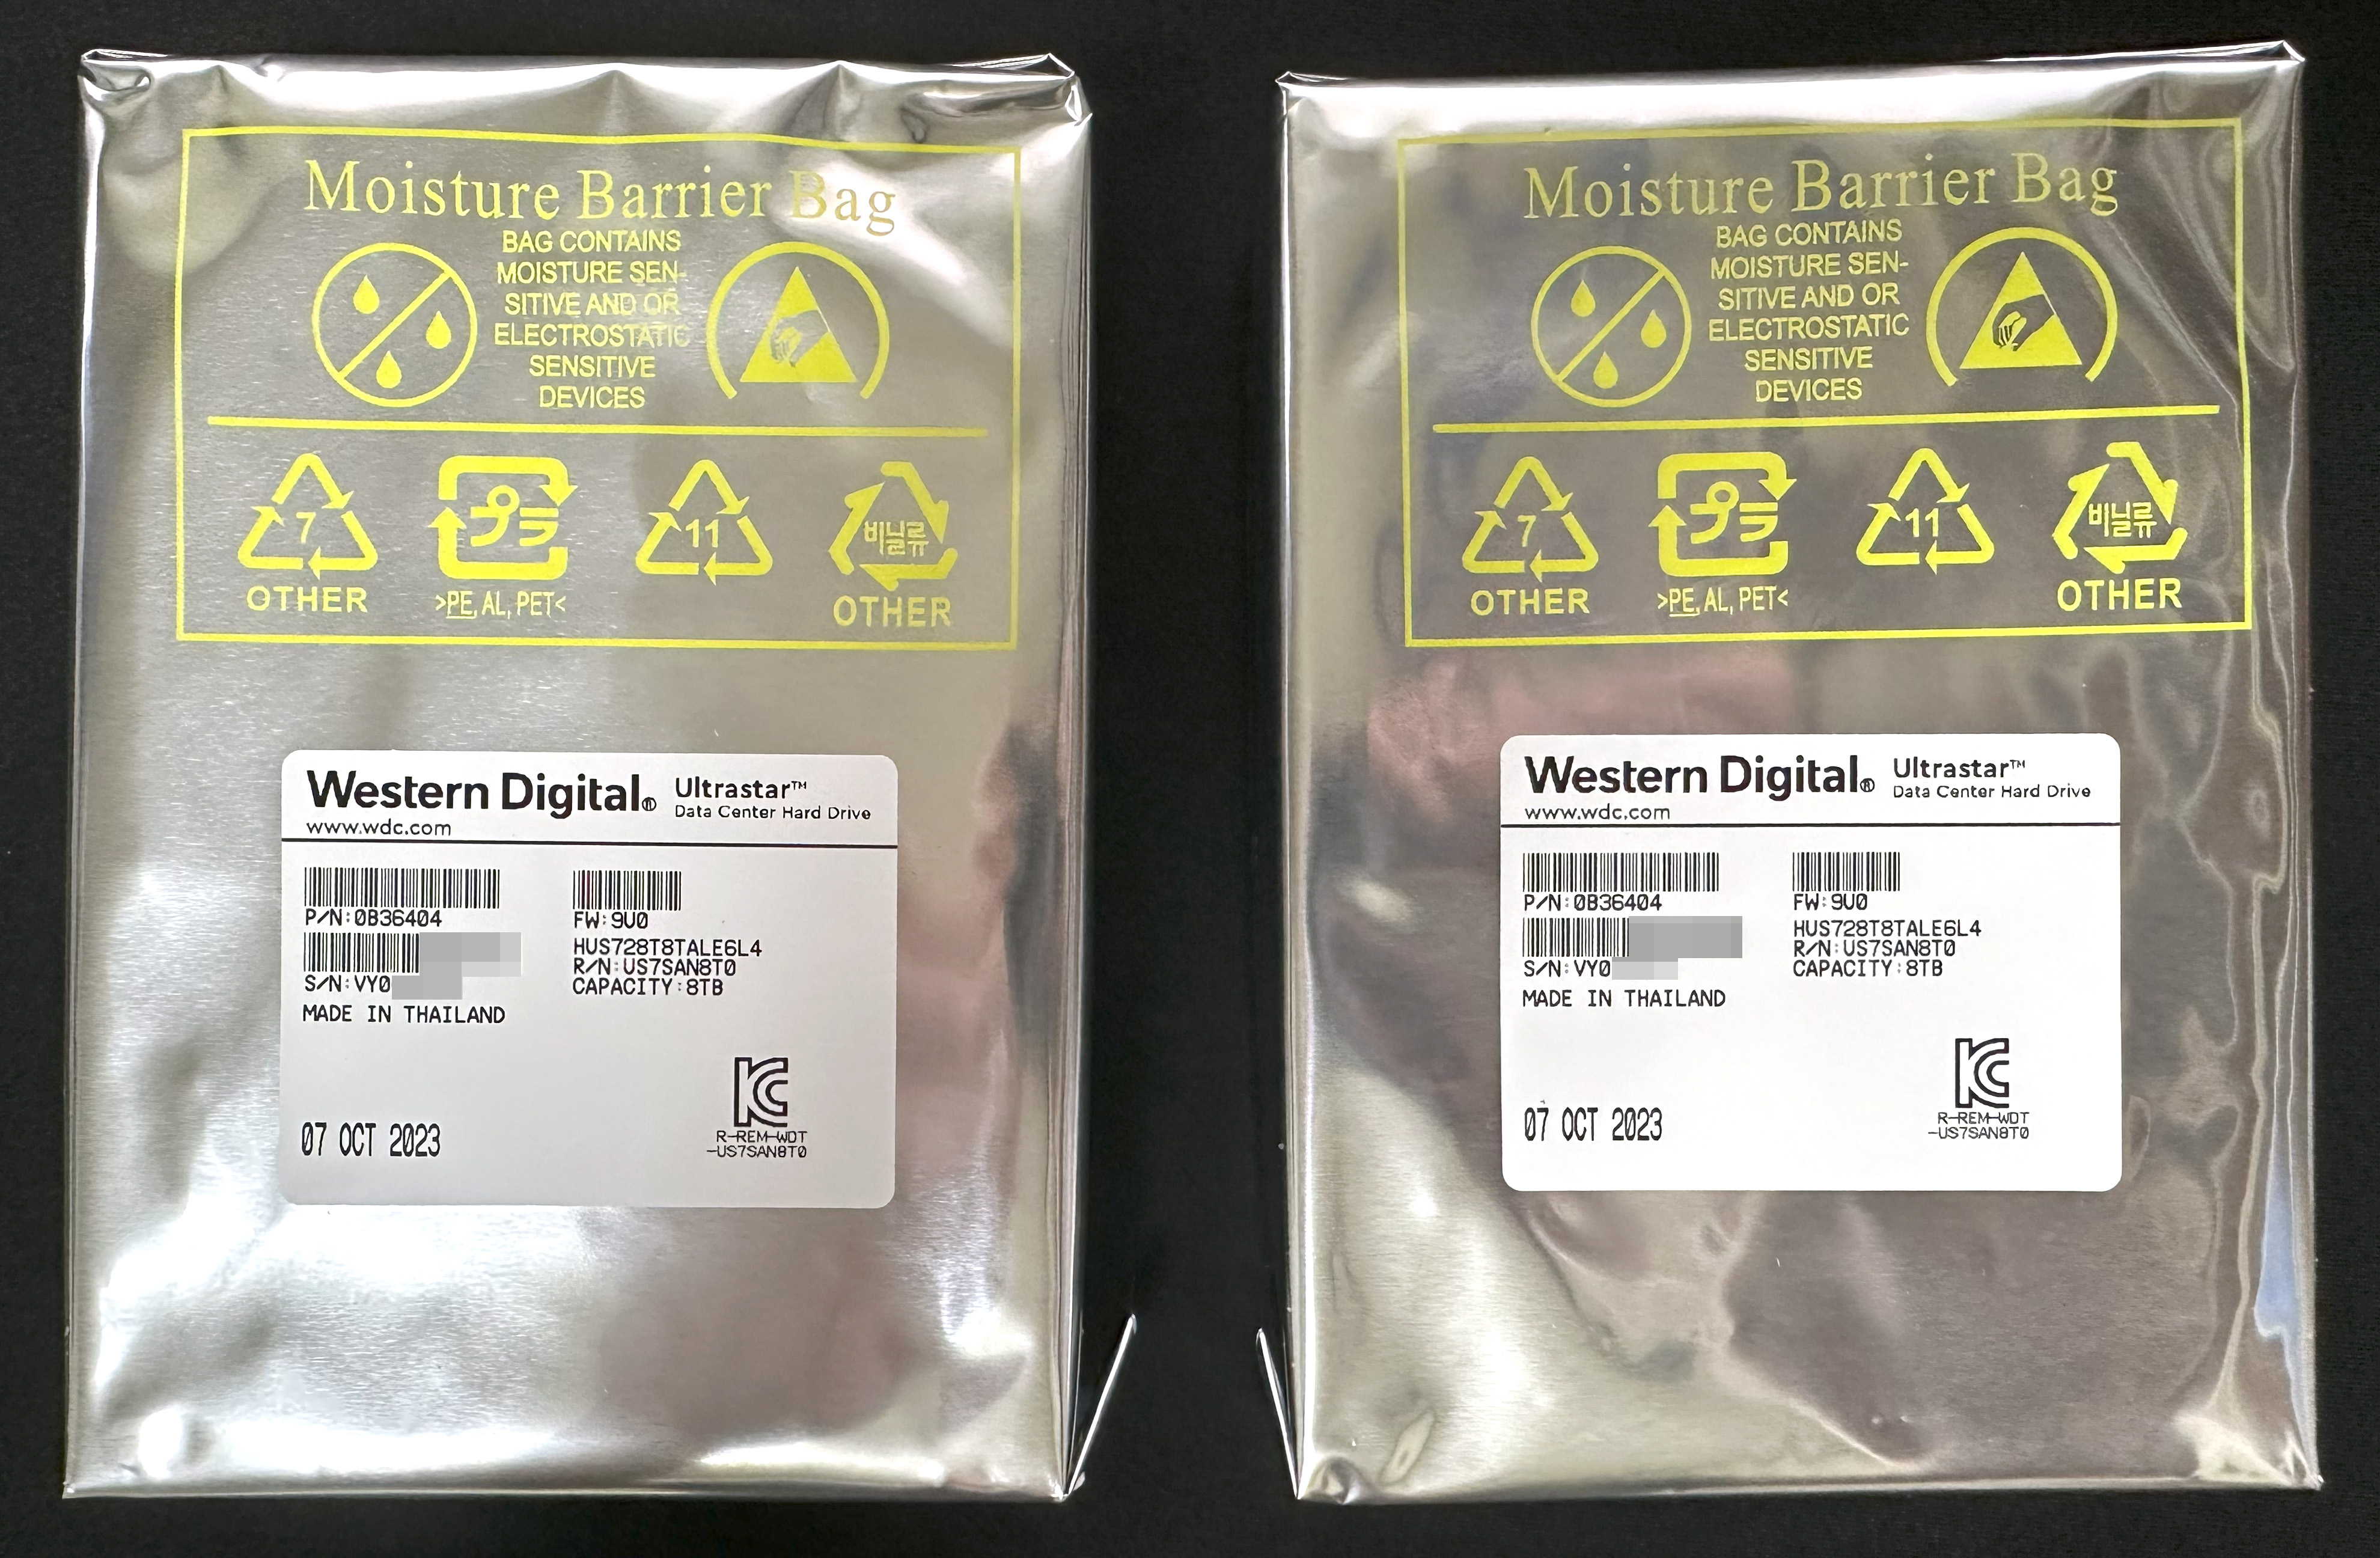 Western Digital Ultrastar DC HC320 8TB (HUS728T8TALE6L4 &#124; US7SAN8T0) Moisture Barrier Bag